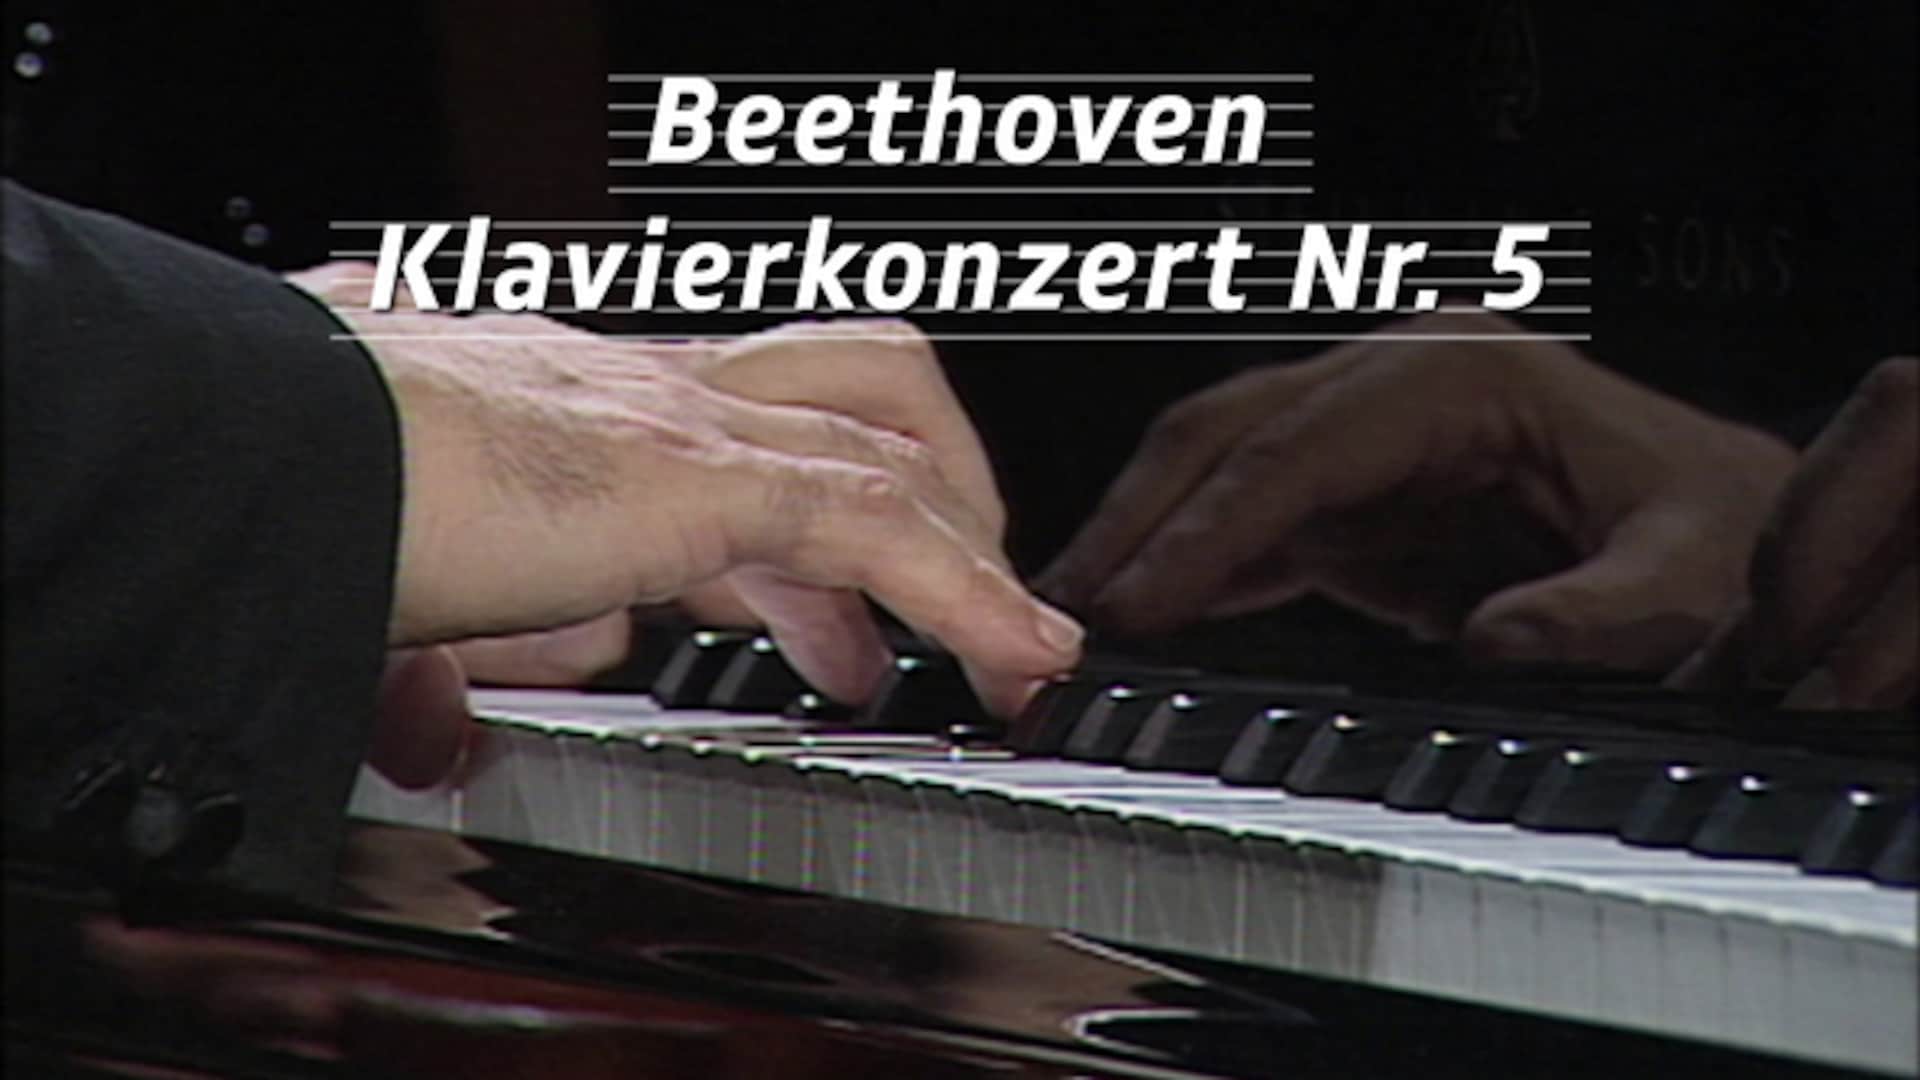 Beethoven - Klavierkonzert Nr. 5